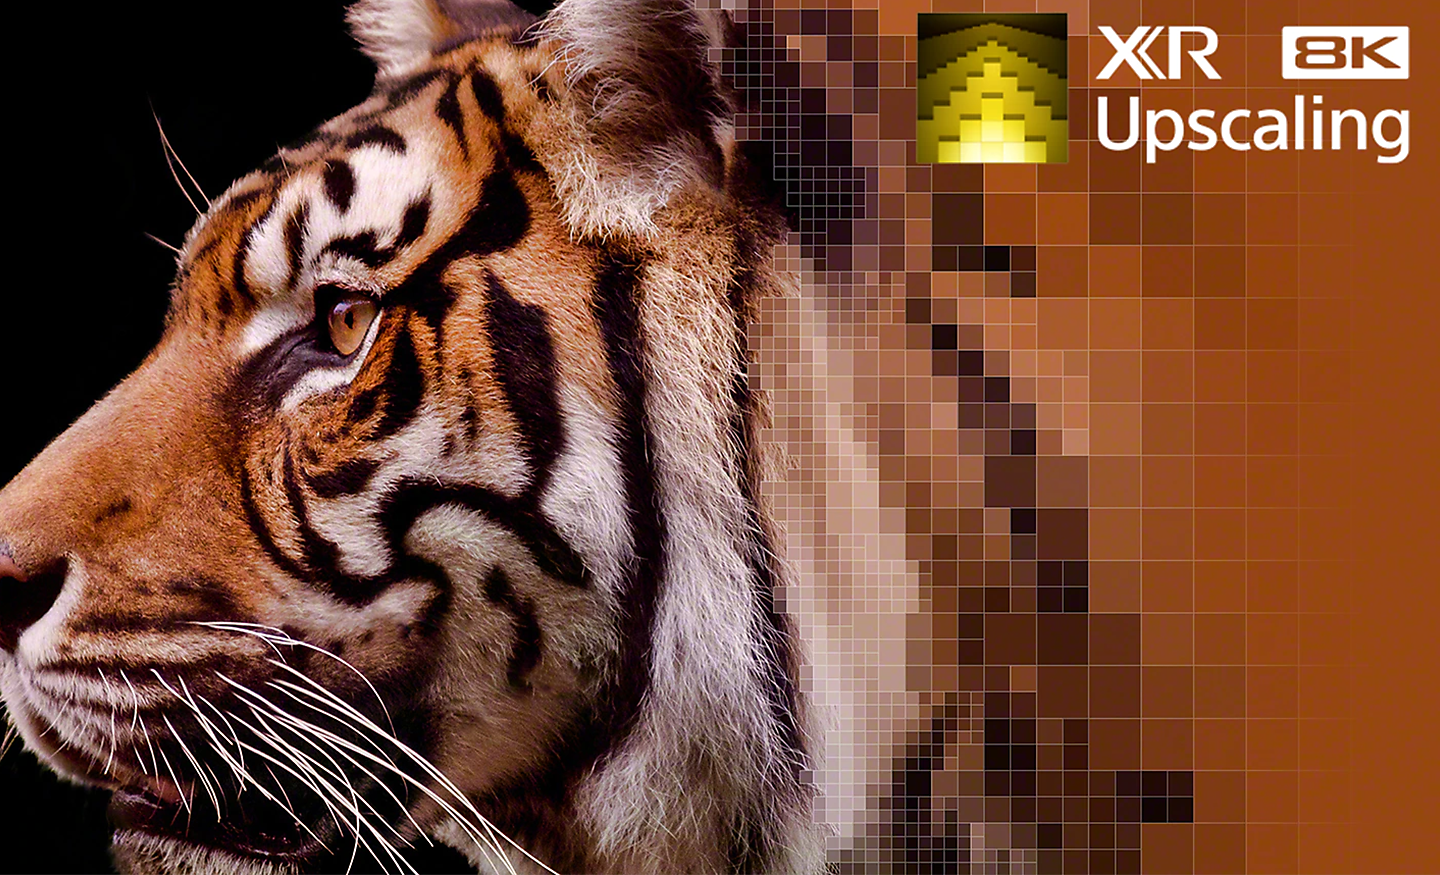 Tigro kailio raštai stambiu planu, atskleidžiantys „XR 8K Upscaling“ efektą